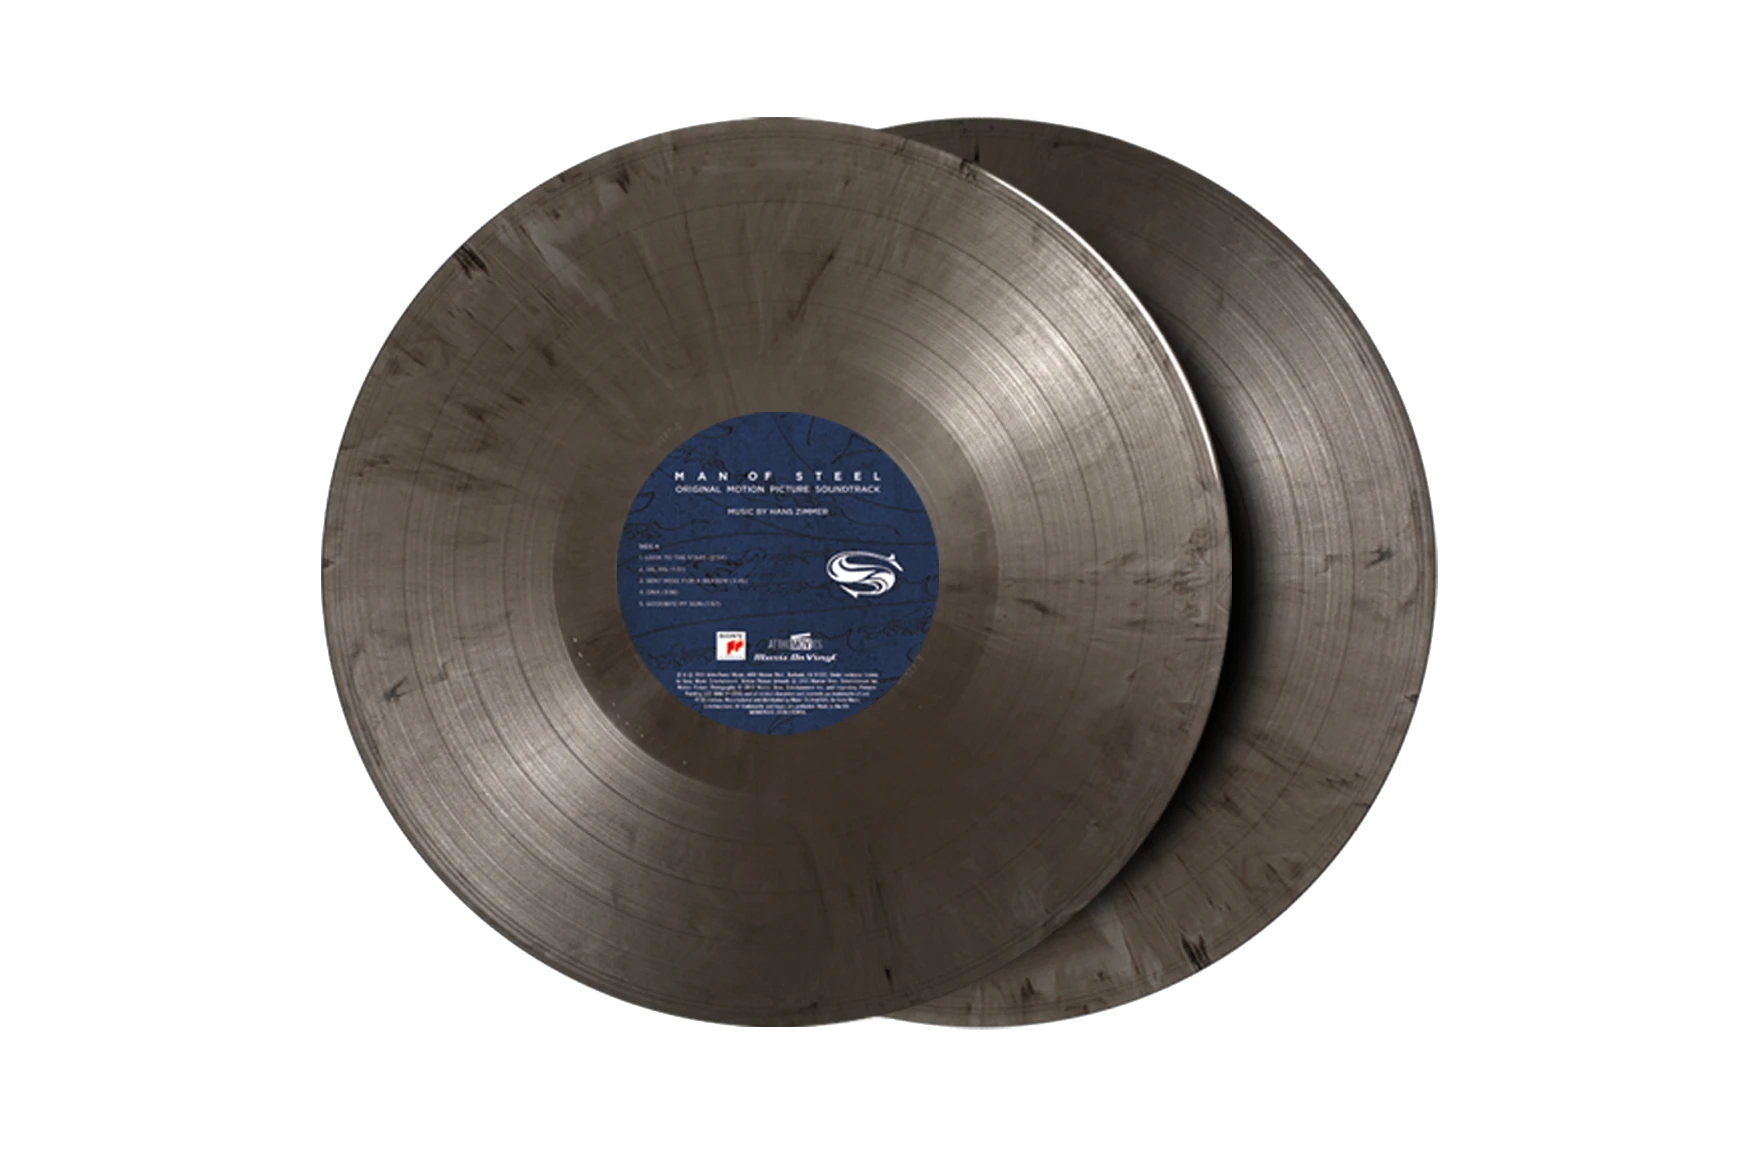  Man Of Steel (Original Soundtrack) - Limited Gatefold, 180-Gram  Silver & Black Marble Colored Vinyl: CDs & Vinyl